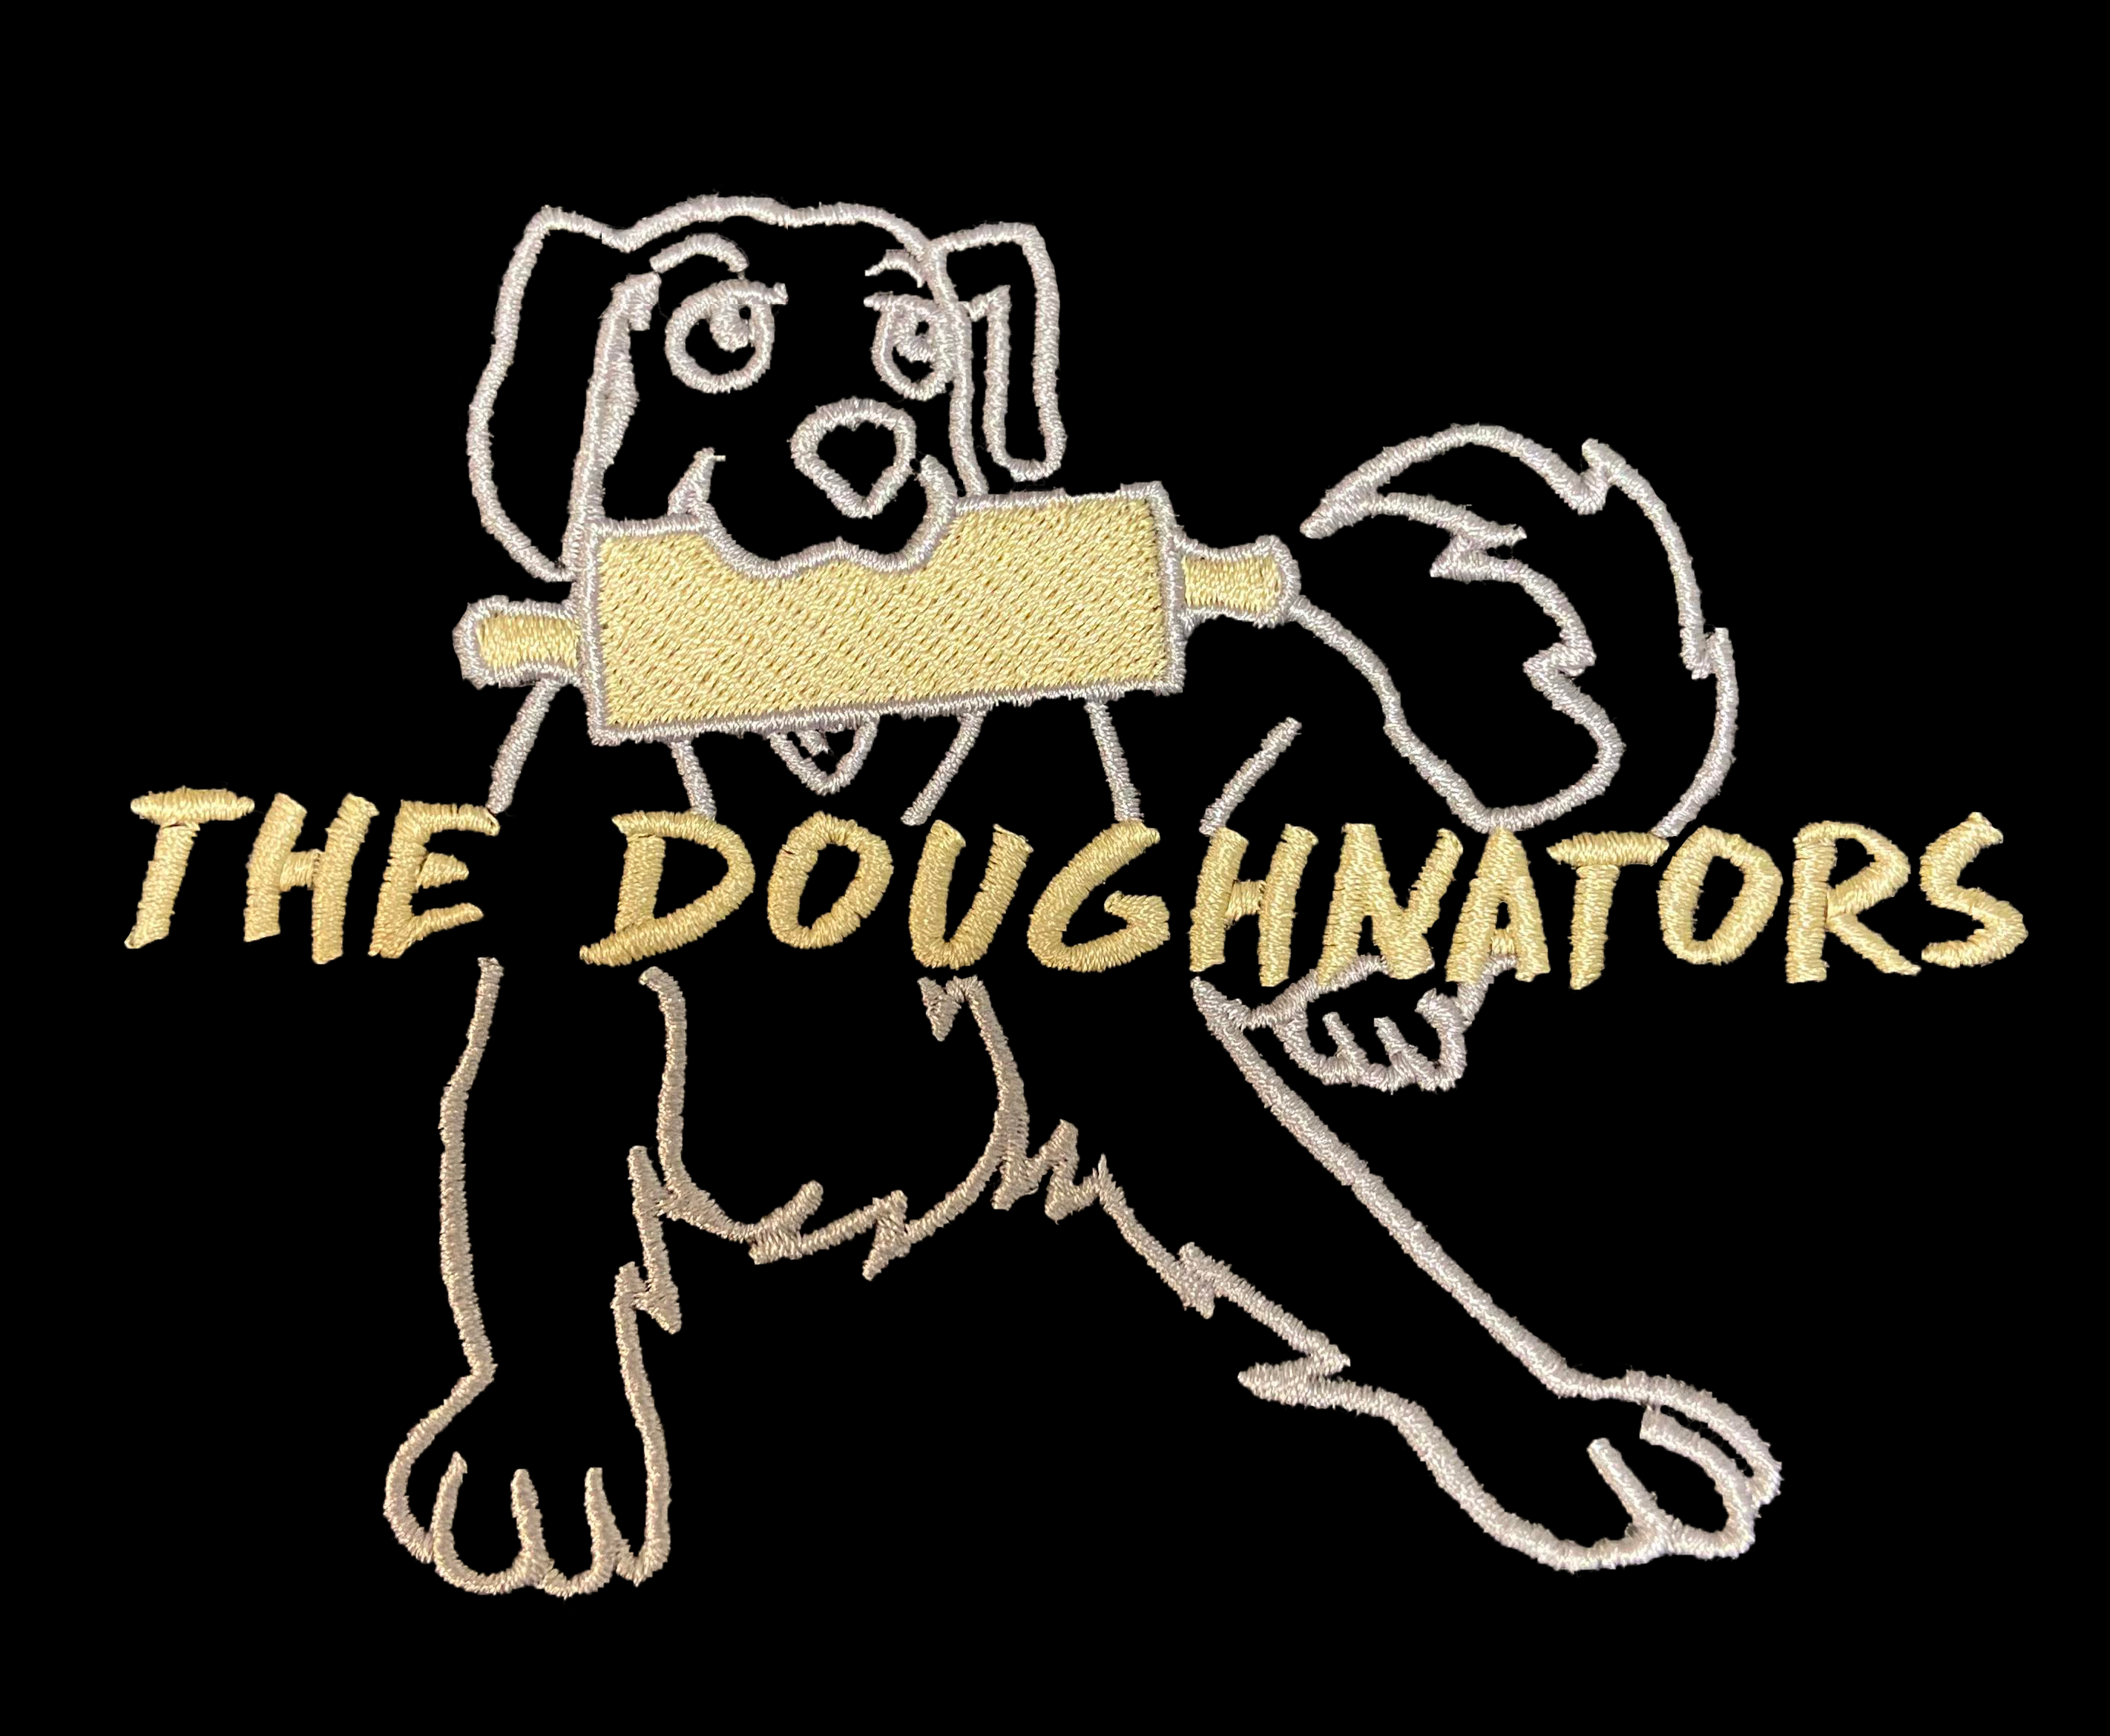 The Doughnators